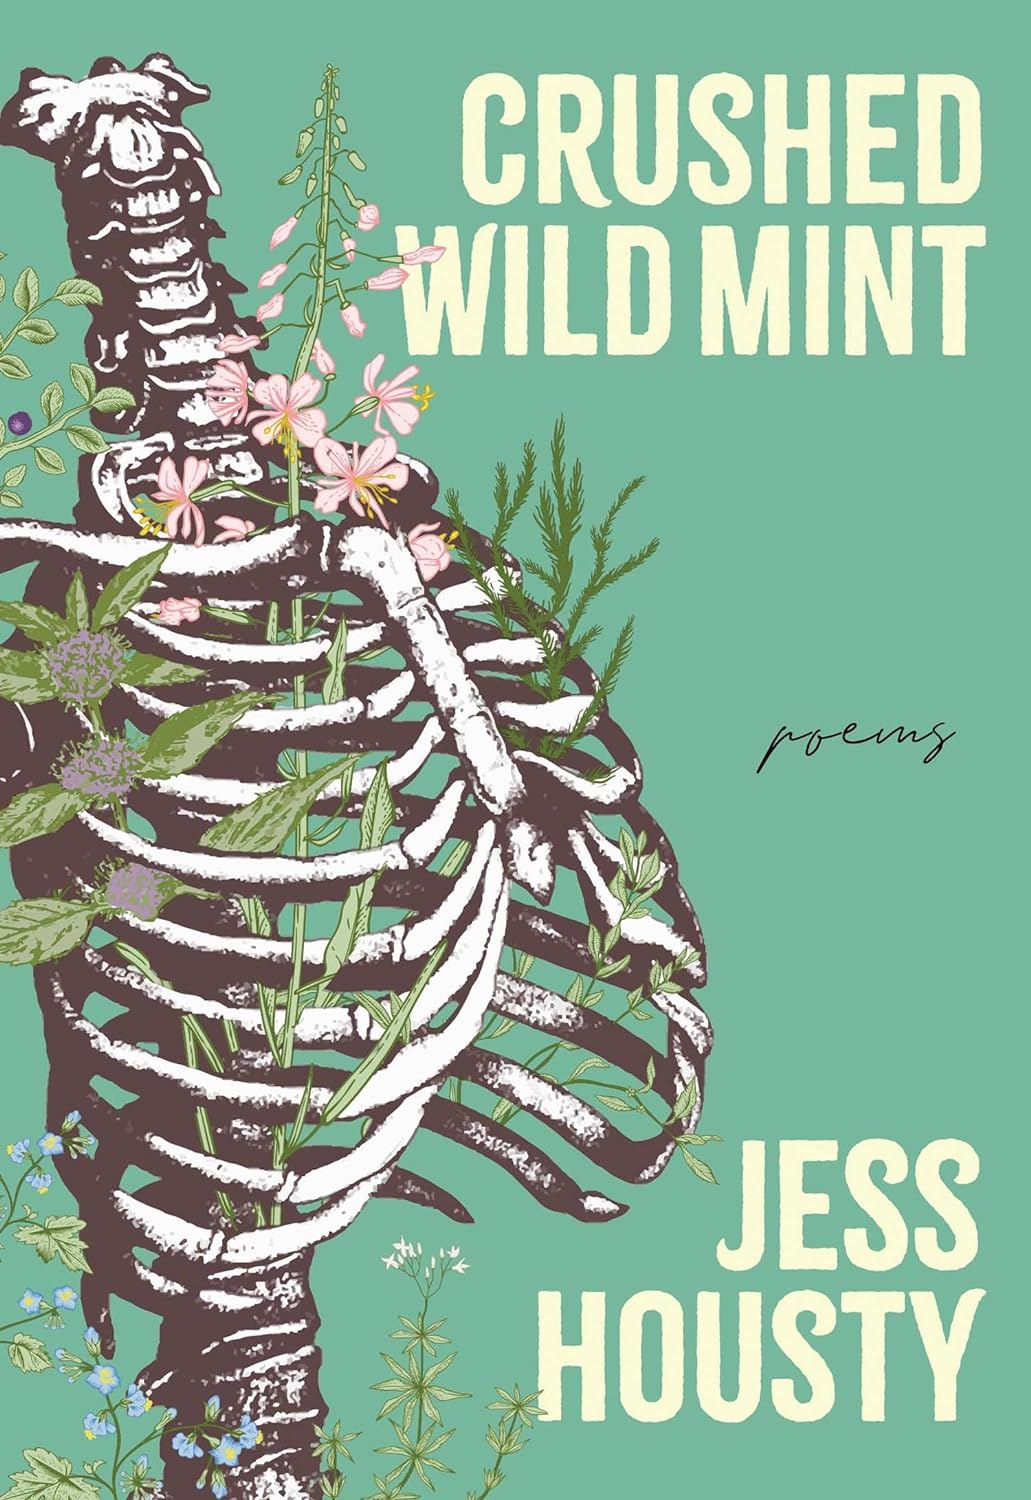 Crushed Wild Mint by Jess Housty